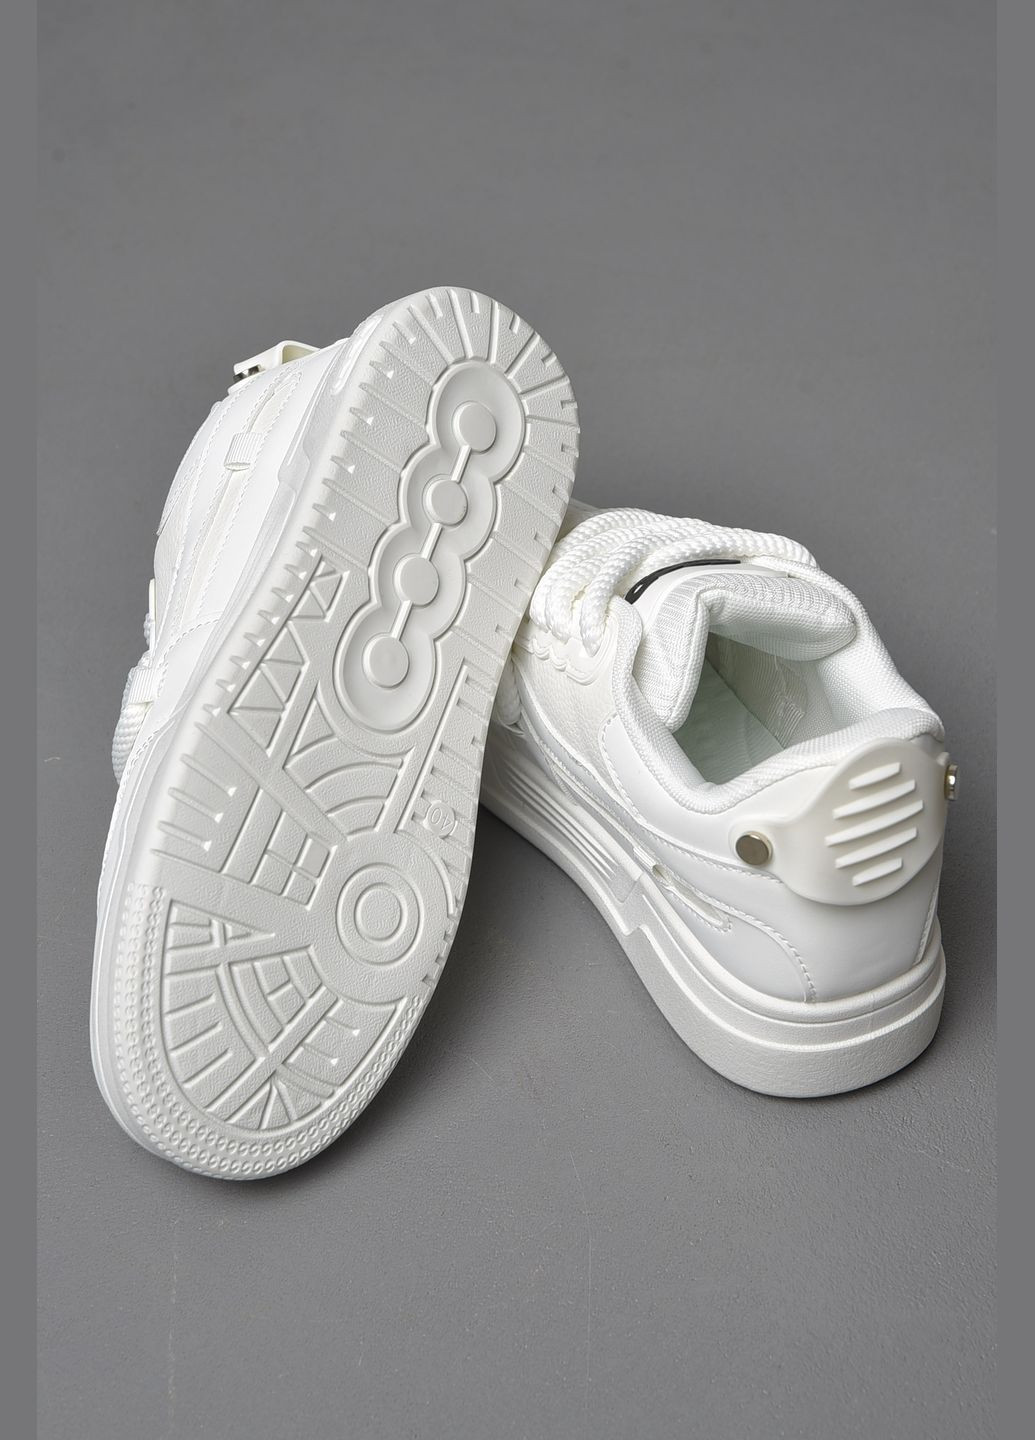 Белые демисезонные кроссовки мужские белого цвета на шнуровке Let's Shop